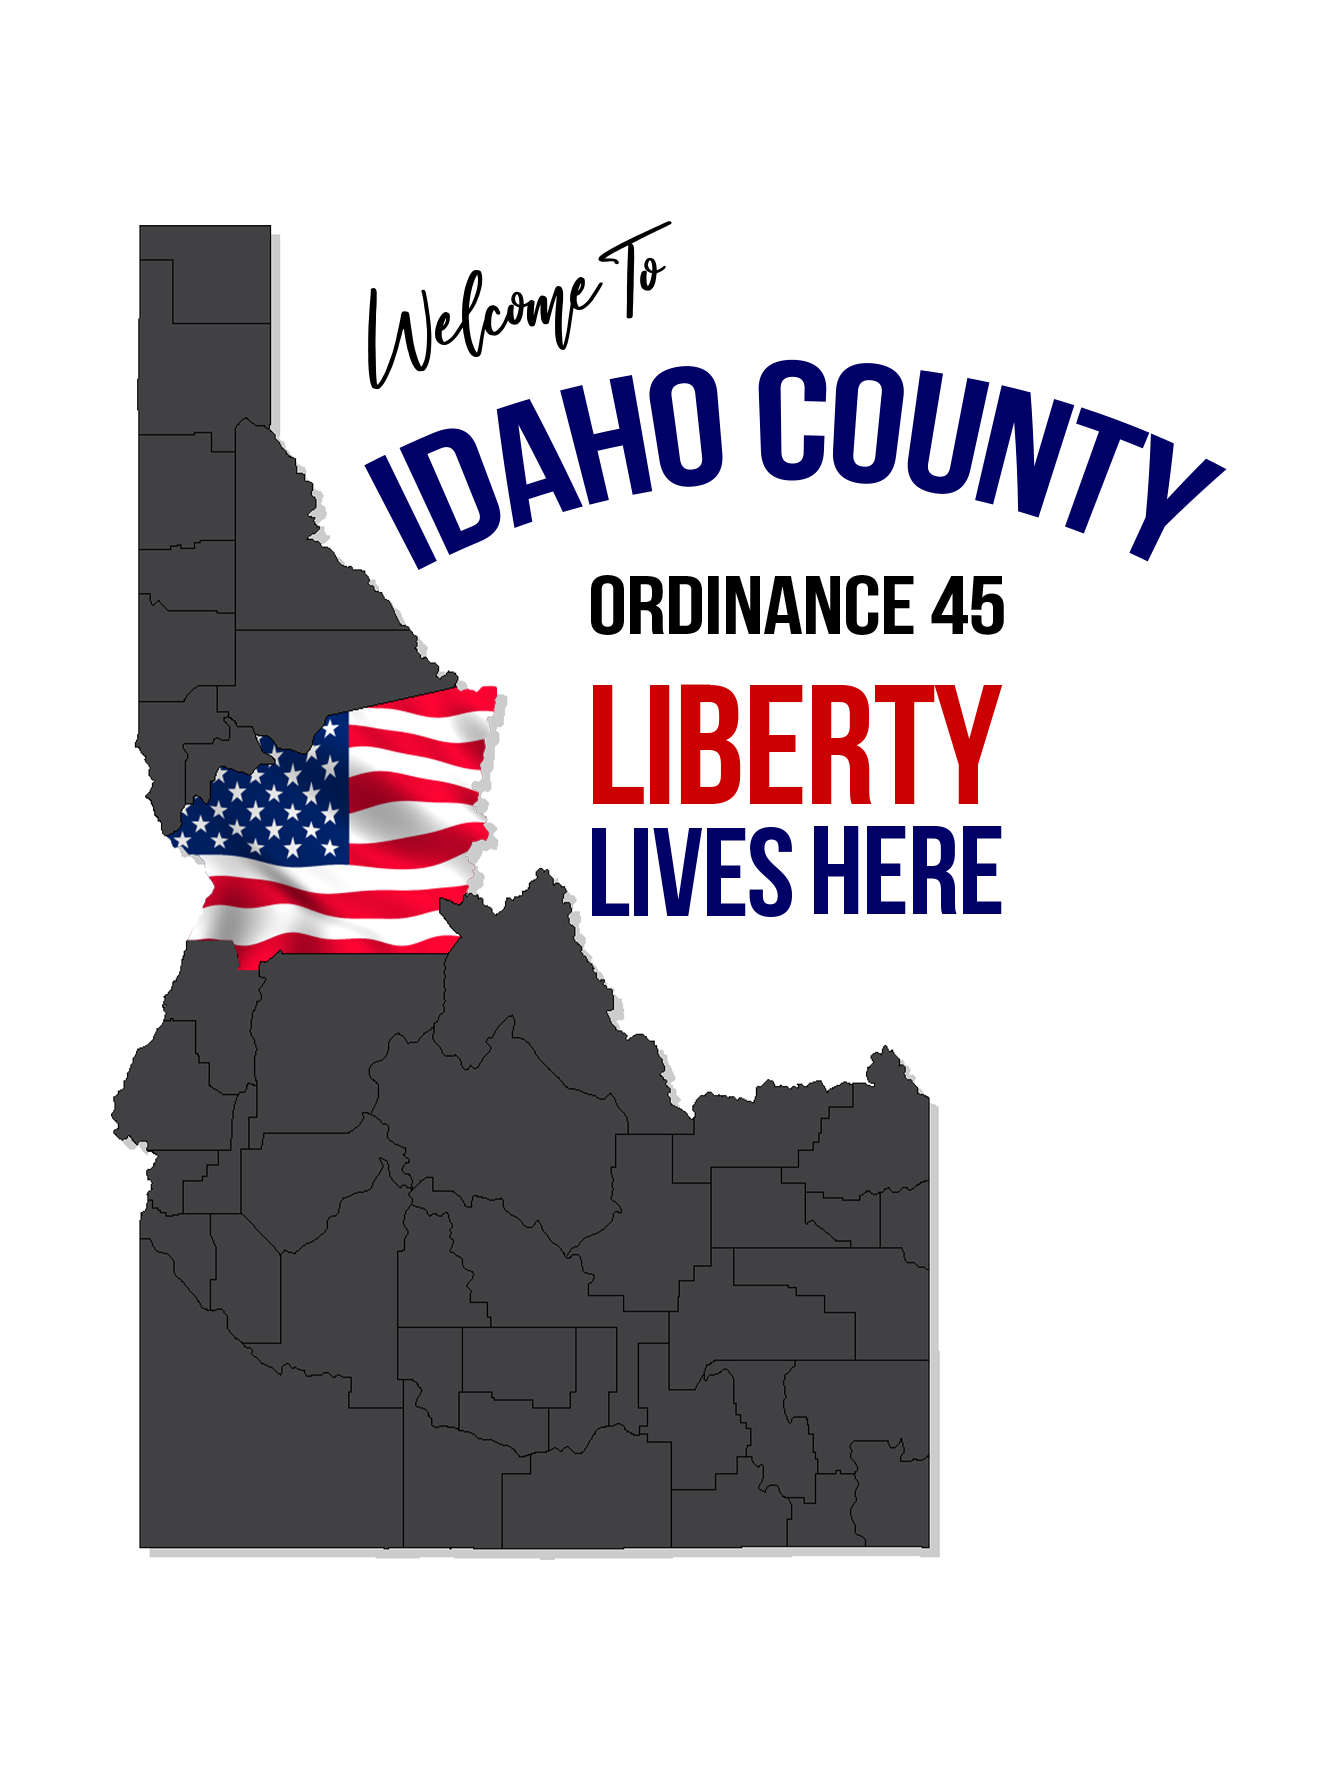 Idaho County Liberty Lives Here.